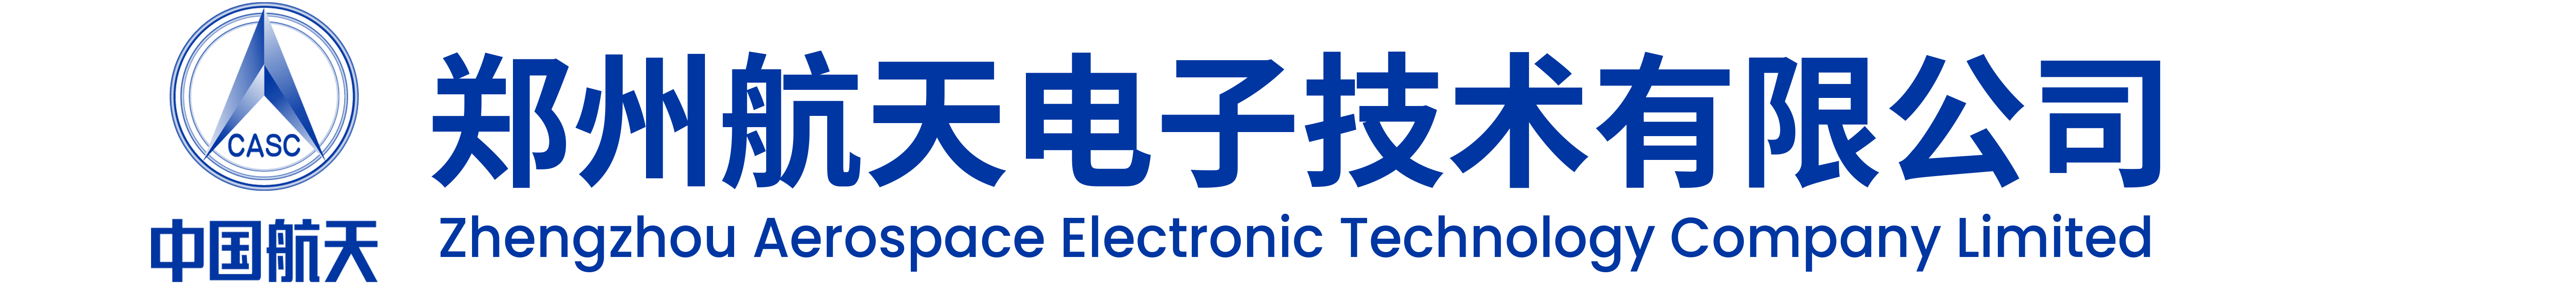 郑州航天电子技术有限公司-中国航天电子技术研究院六九三厂